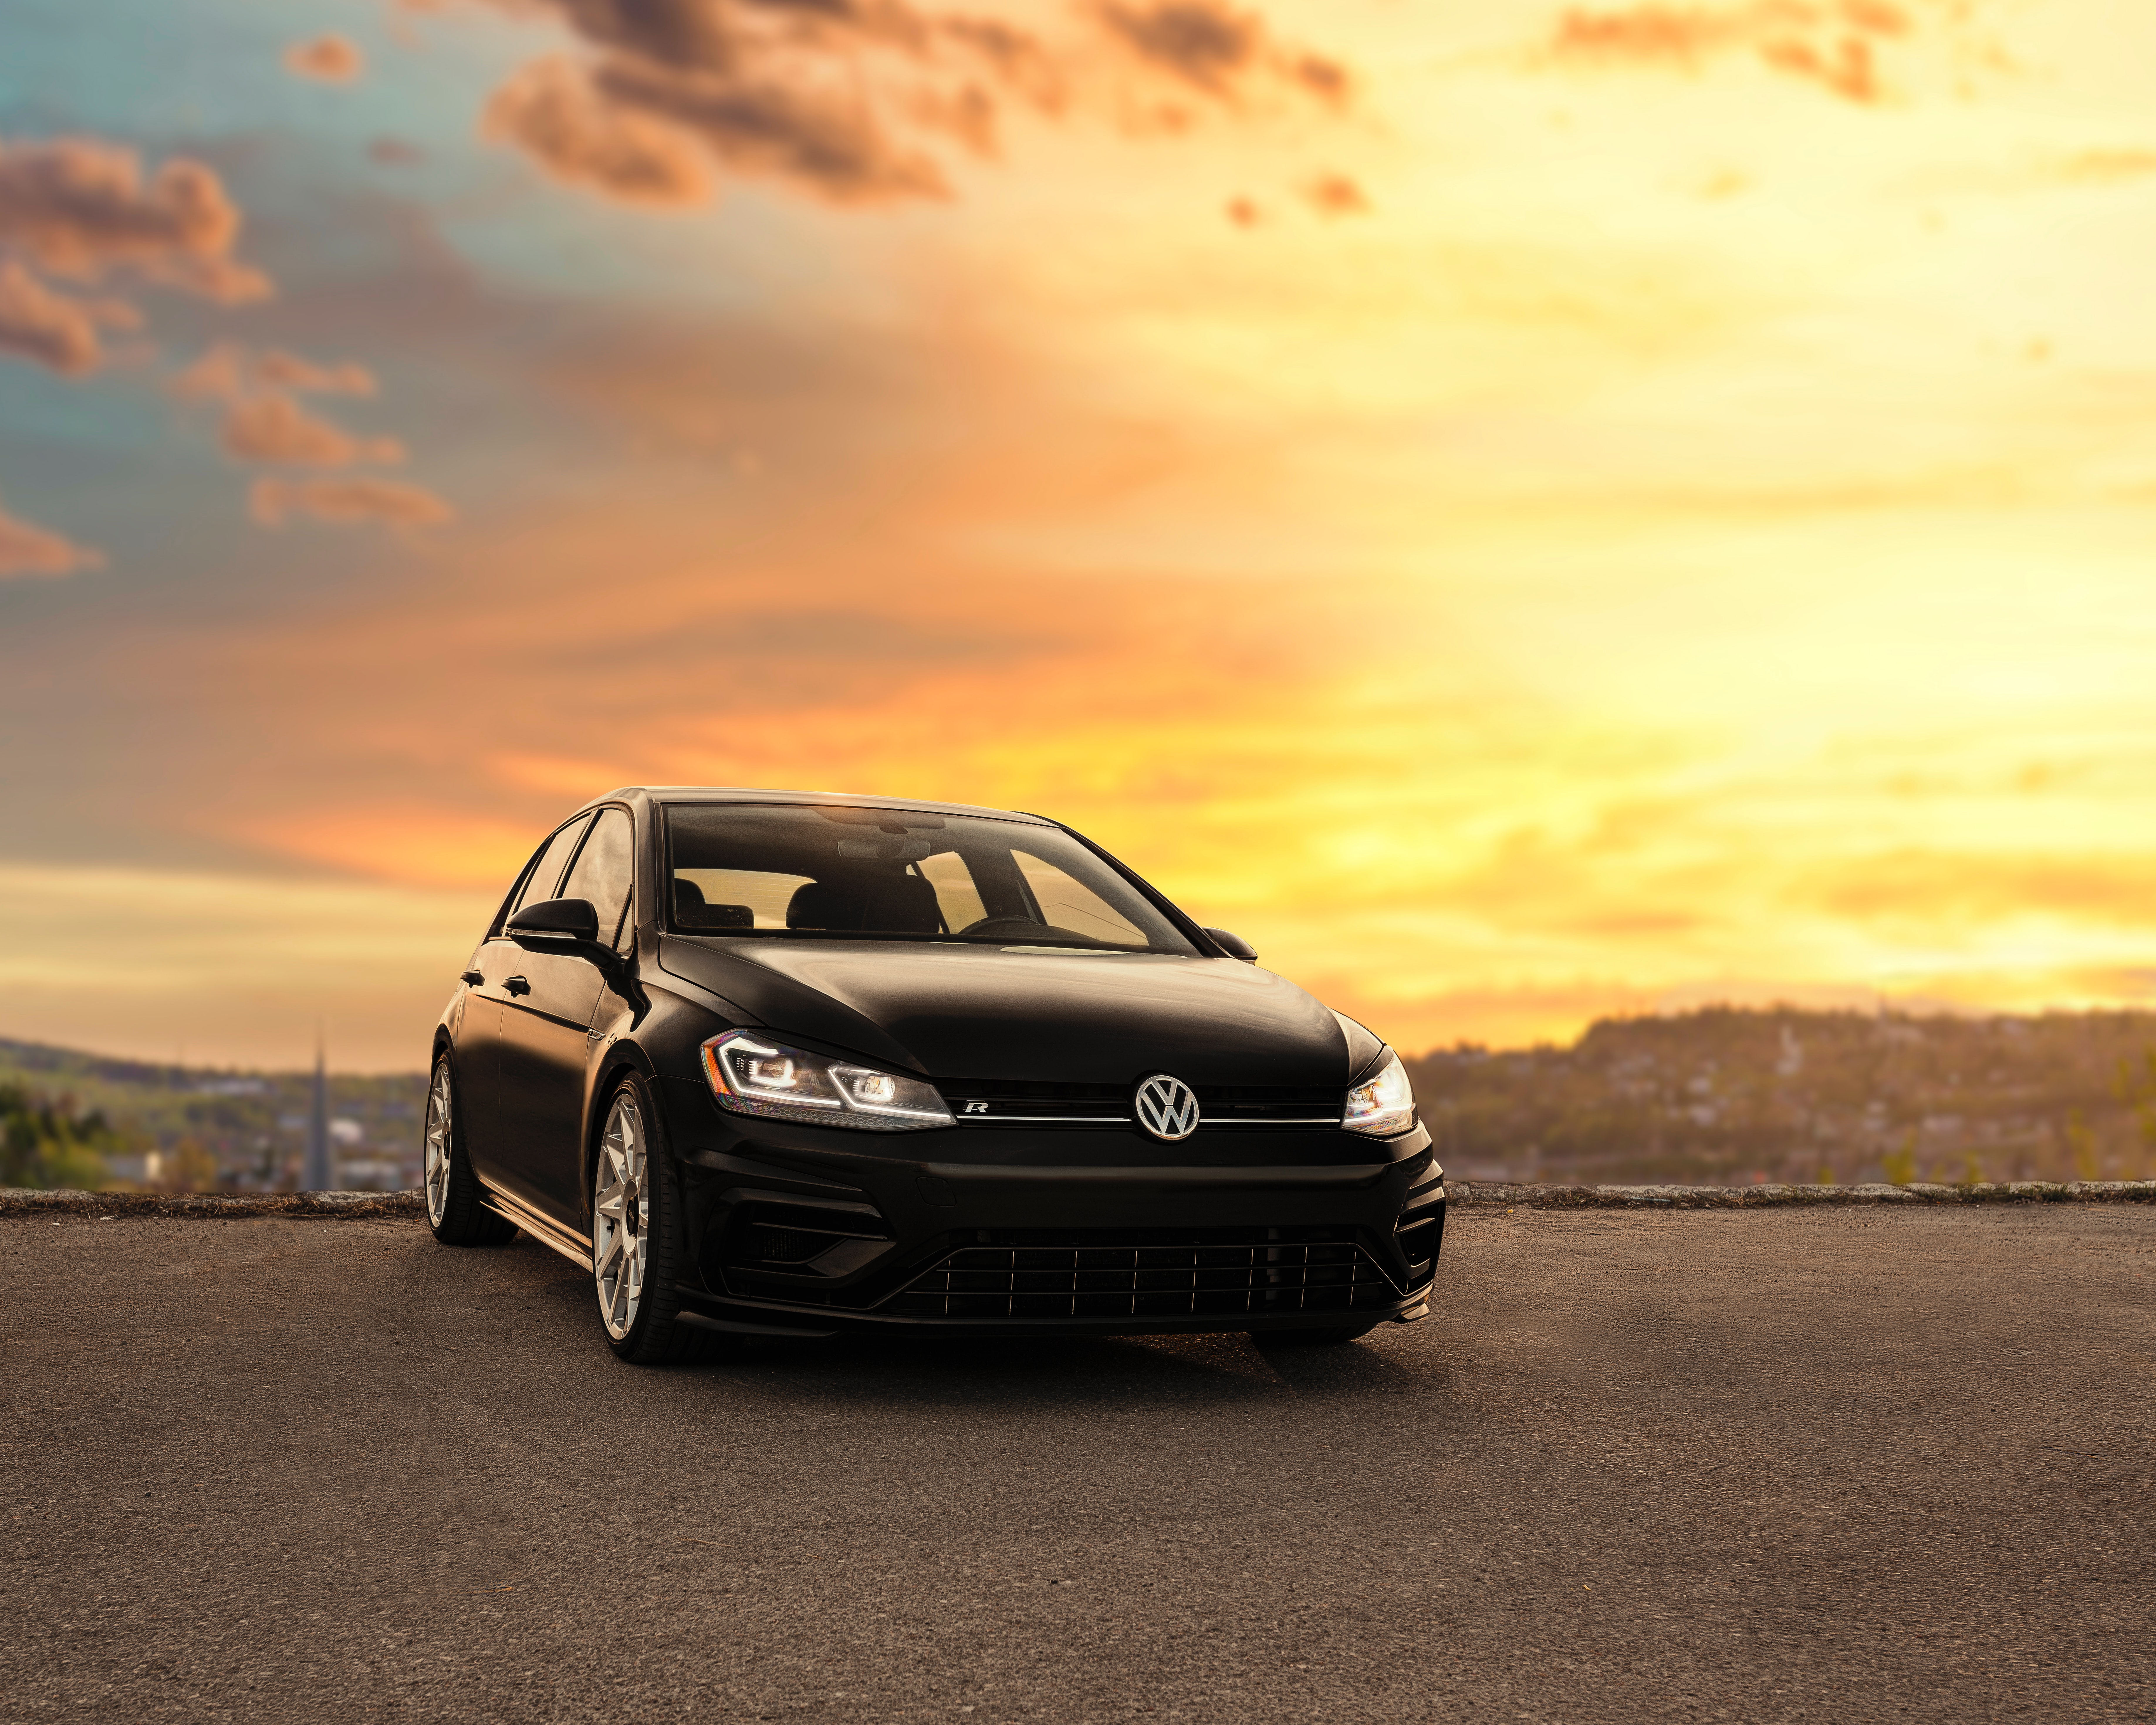 Cool Volkswagen Backgrounds